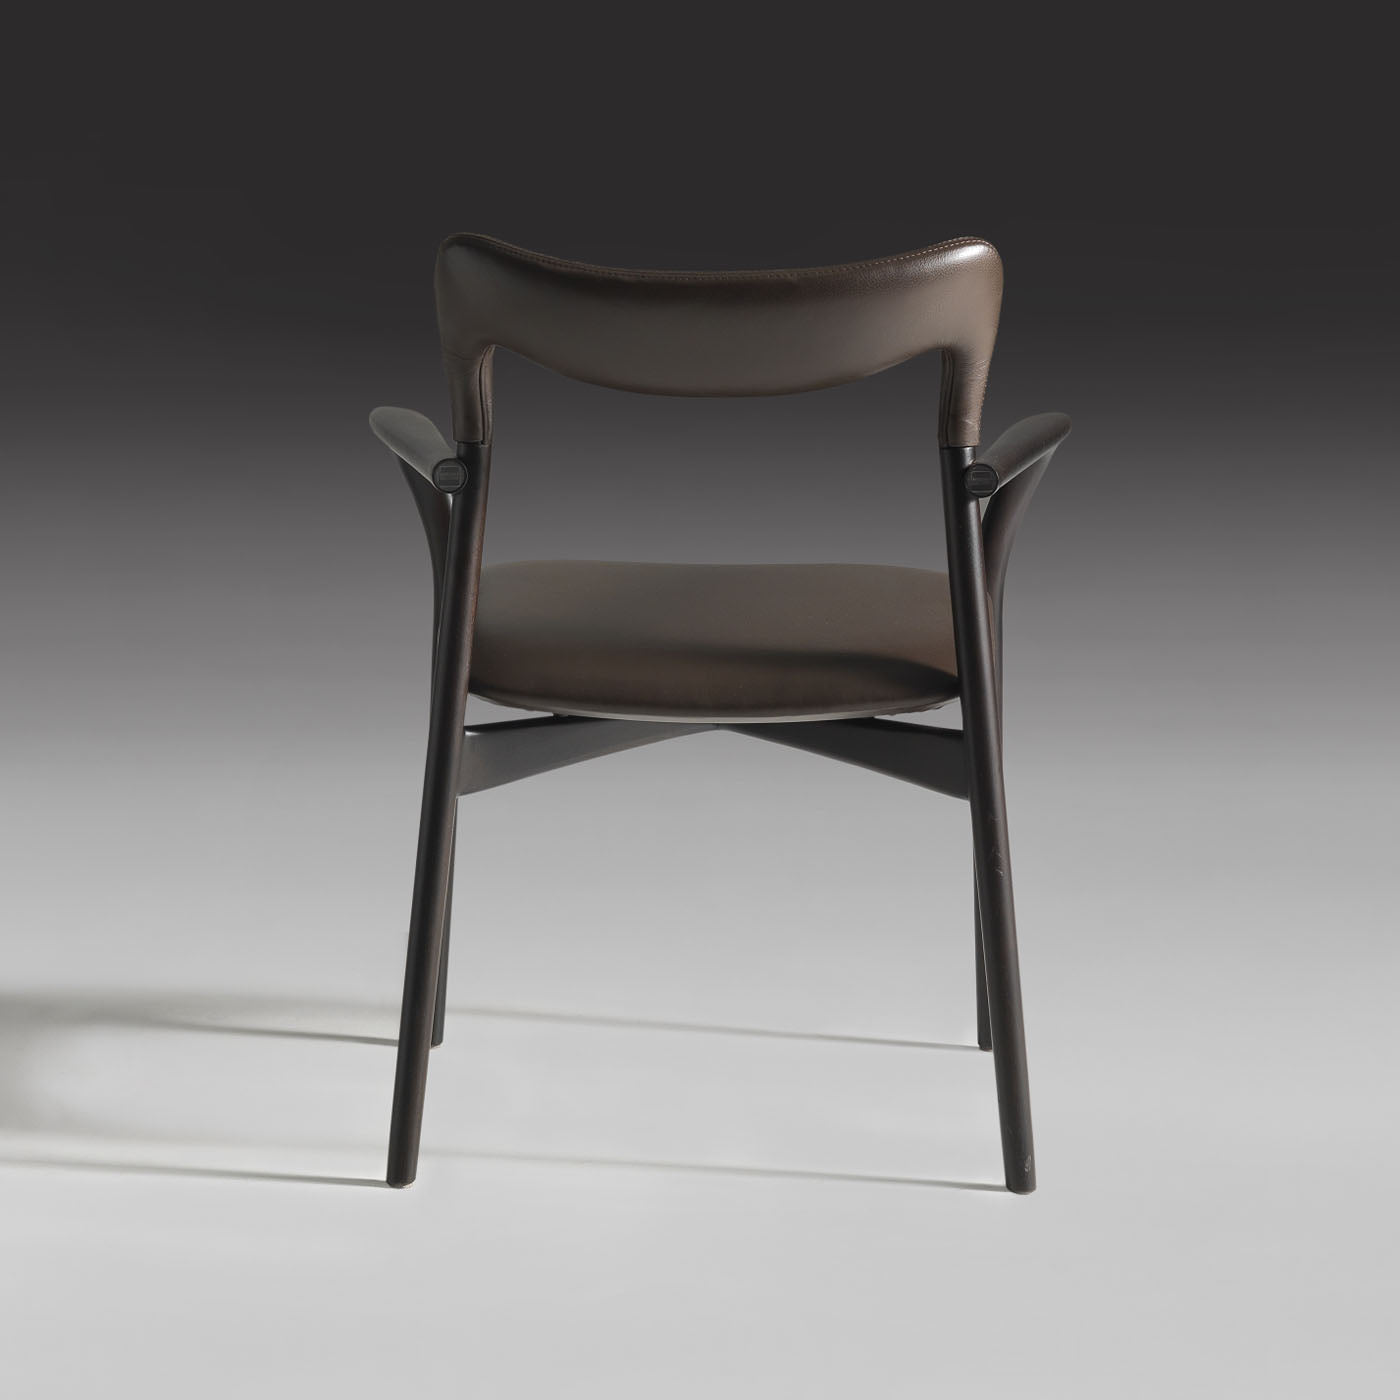 Achille Dark Leather Chair - Alternative view 2